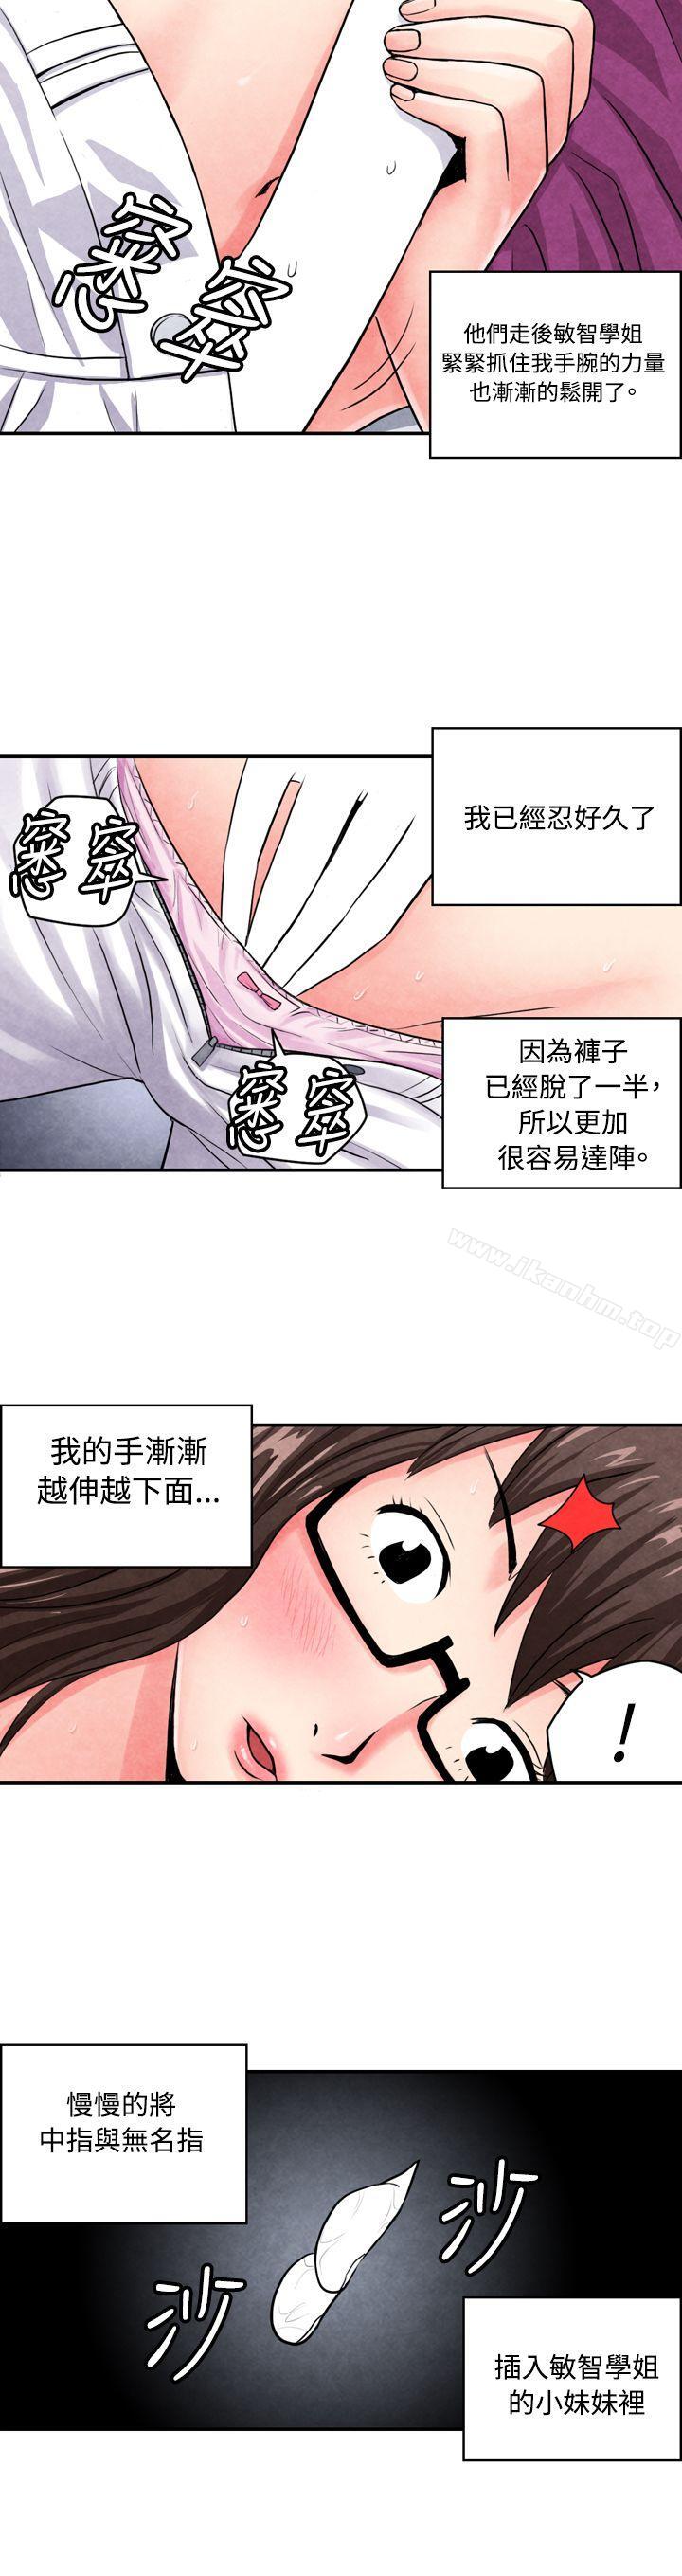 漫画韩国 生物學的女性攻略法   - 立即阅读 生物學的女性攻略法 CASE 02-2. 在陌生地方的悸動第3漫画图片